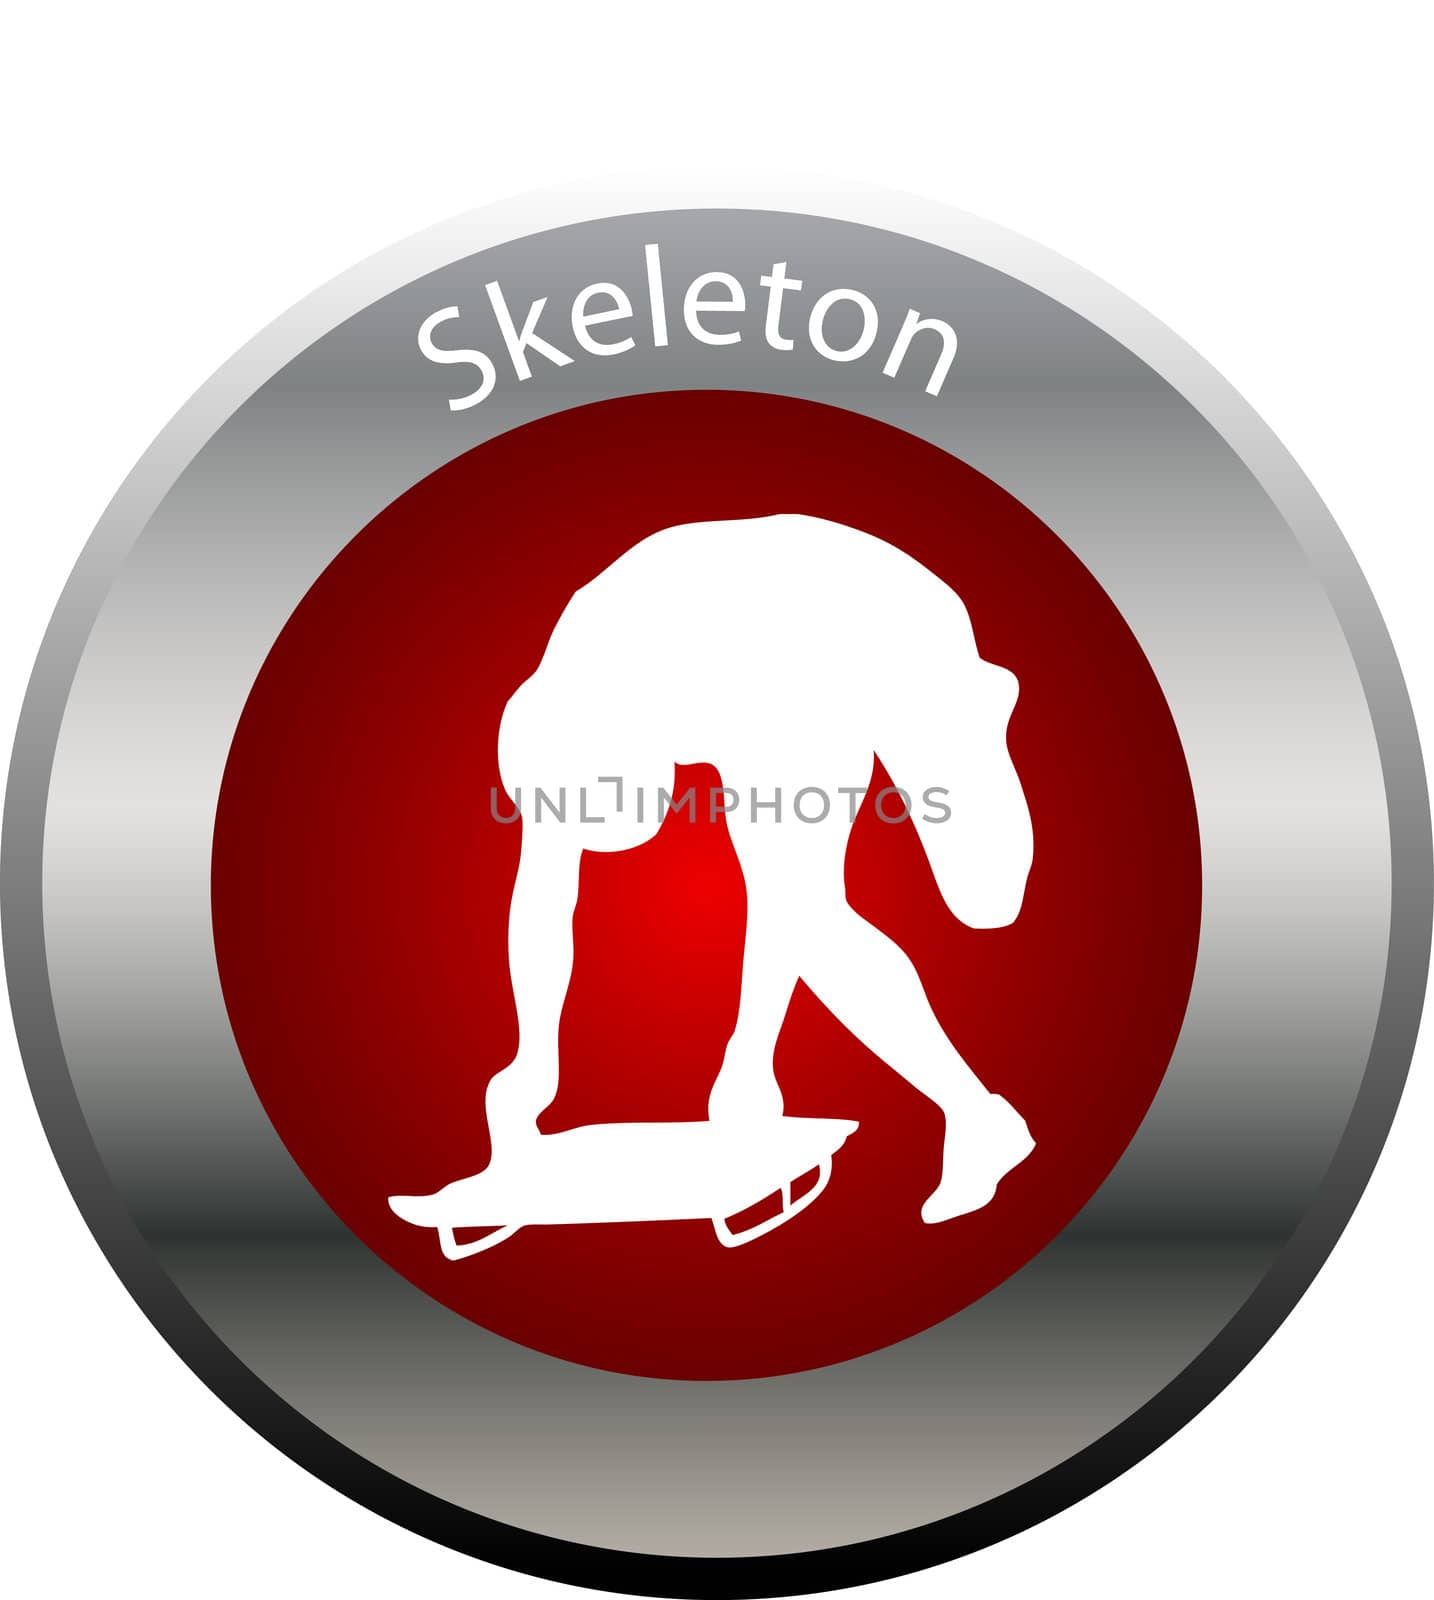 winter game button skeleton